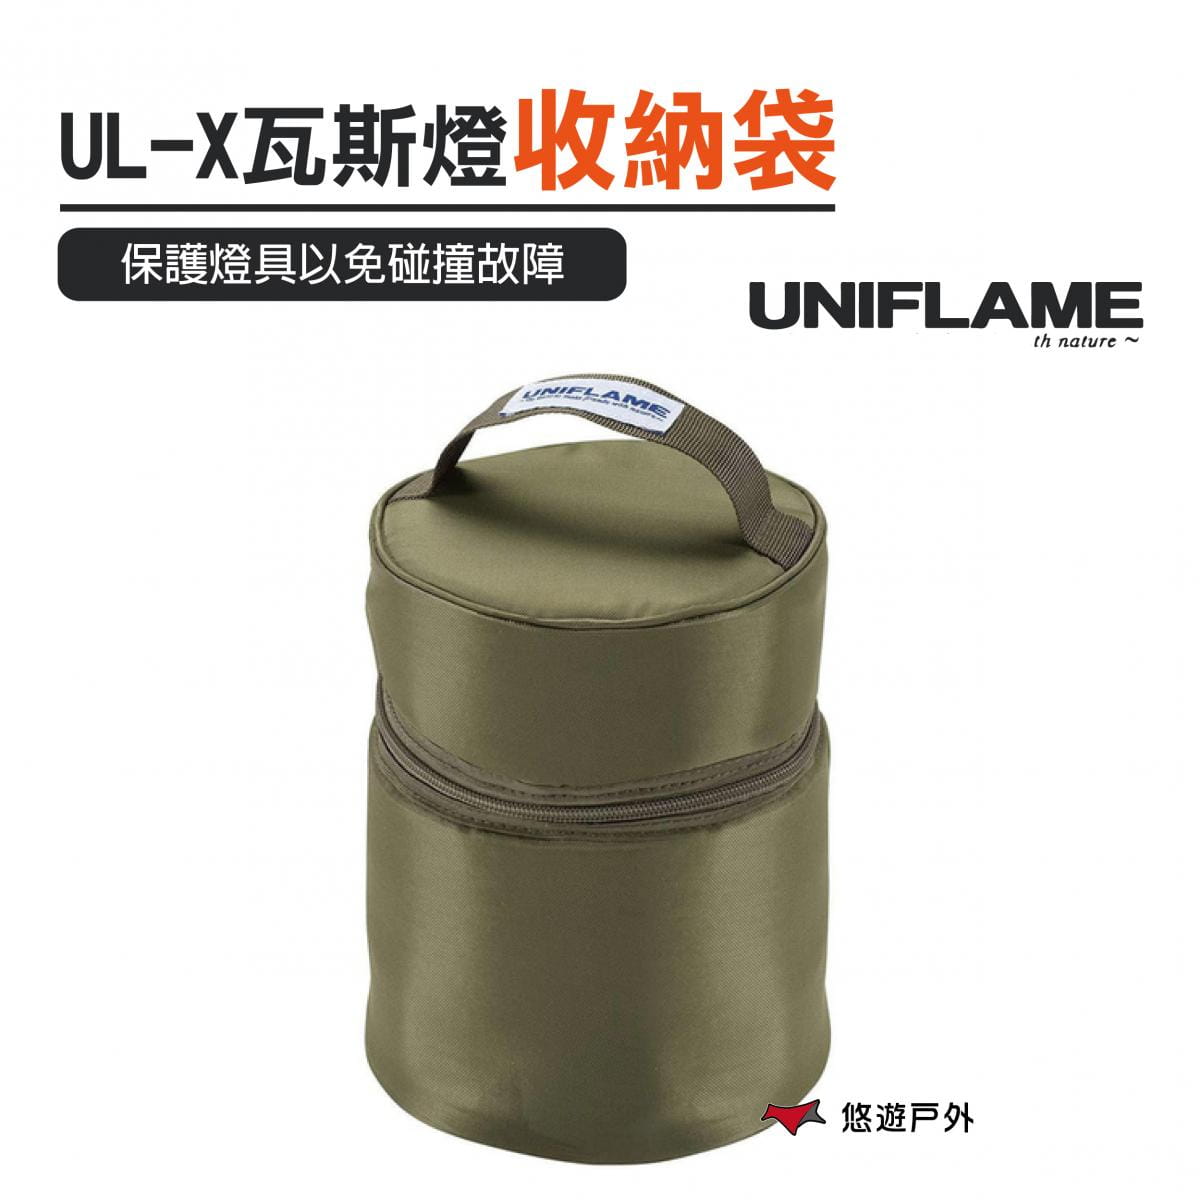 【UNIFLAME】 UL-X卡式瓦斯燈收納袋 (悠遊戶外) 0